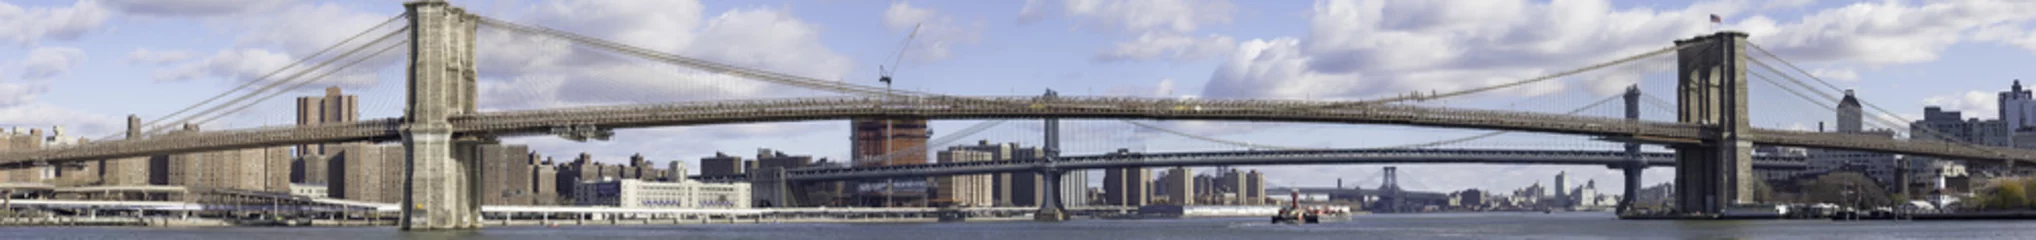 Draagtas Brooklyn Bridge, New York © thecoach1